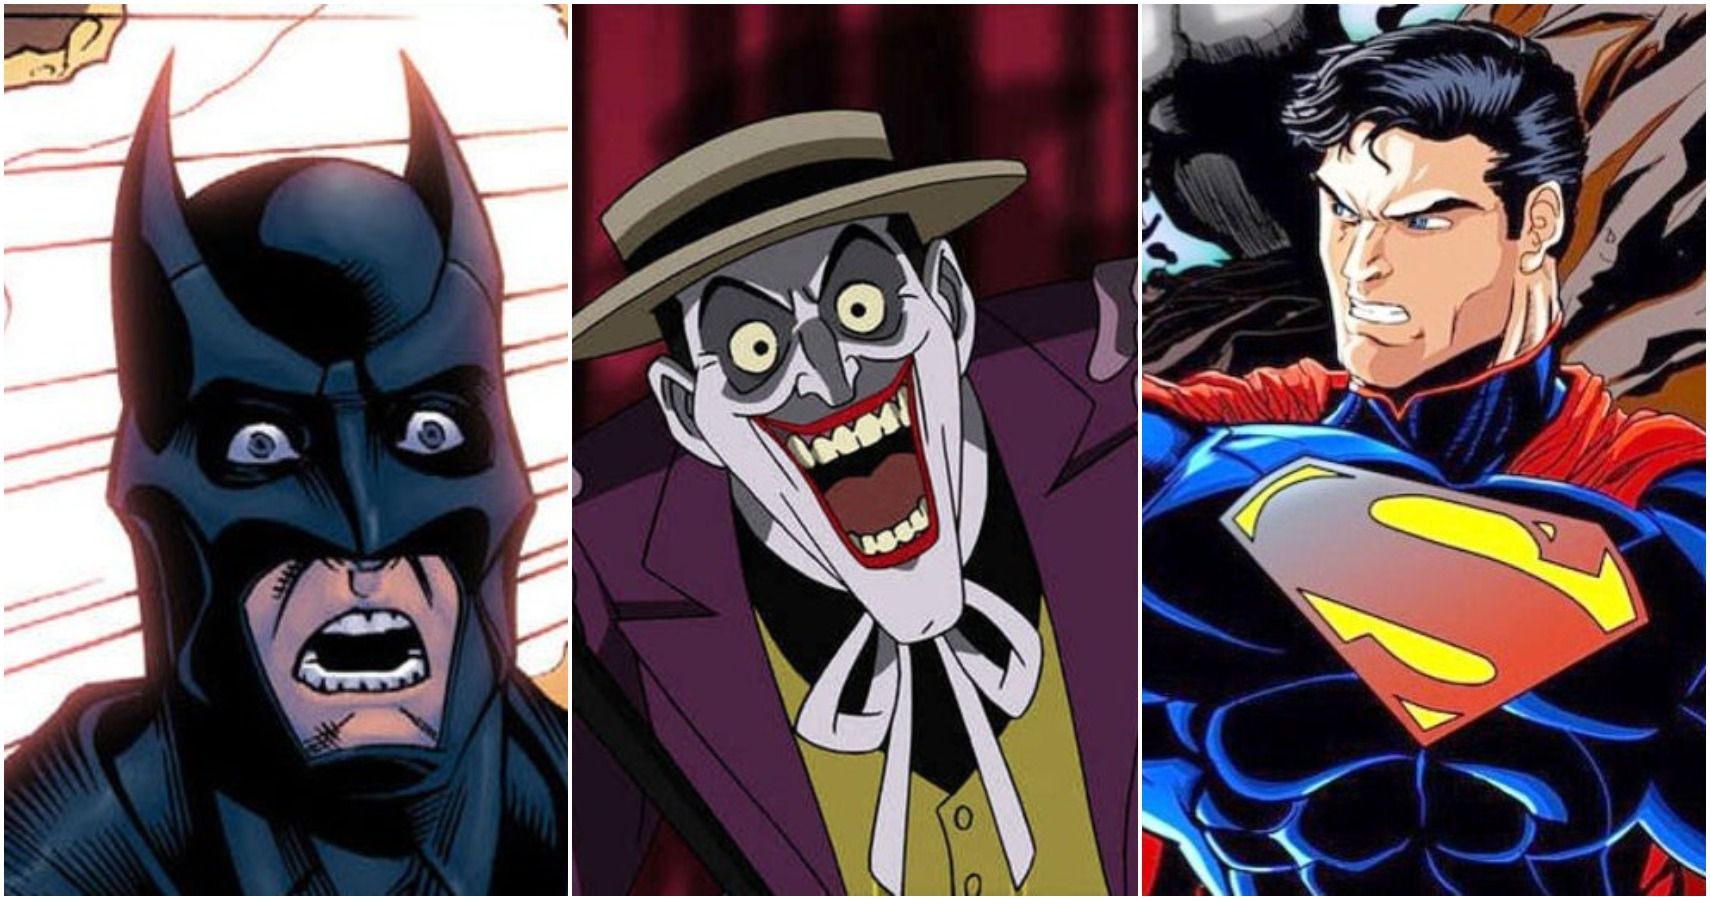 ¿Qué cinco miembros puede destruir el Joker?